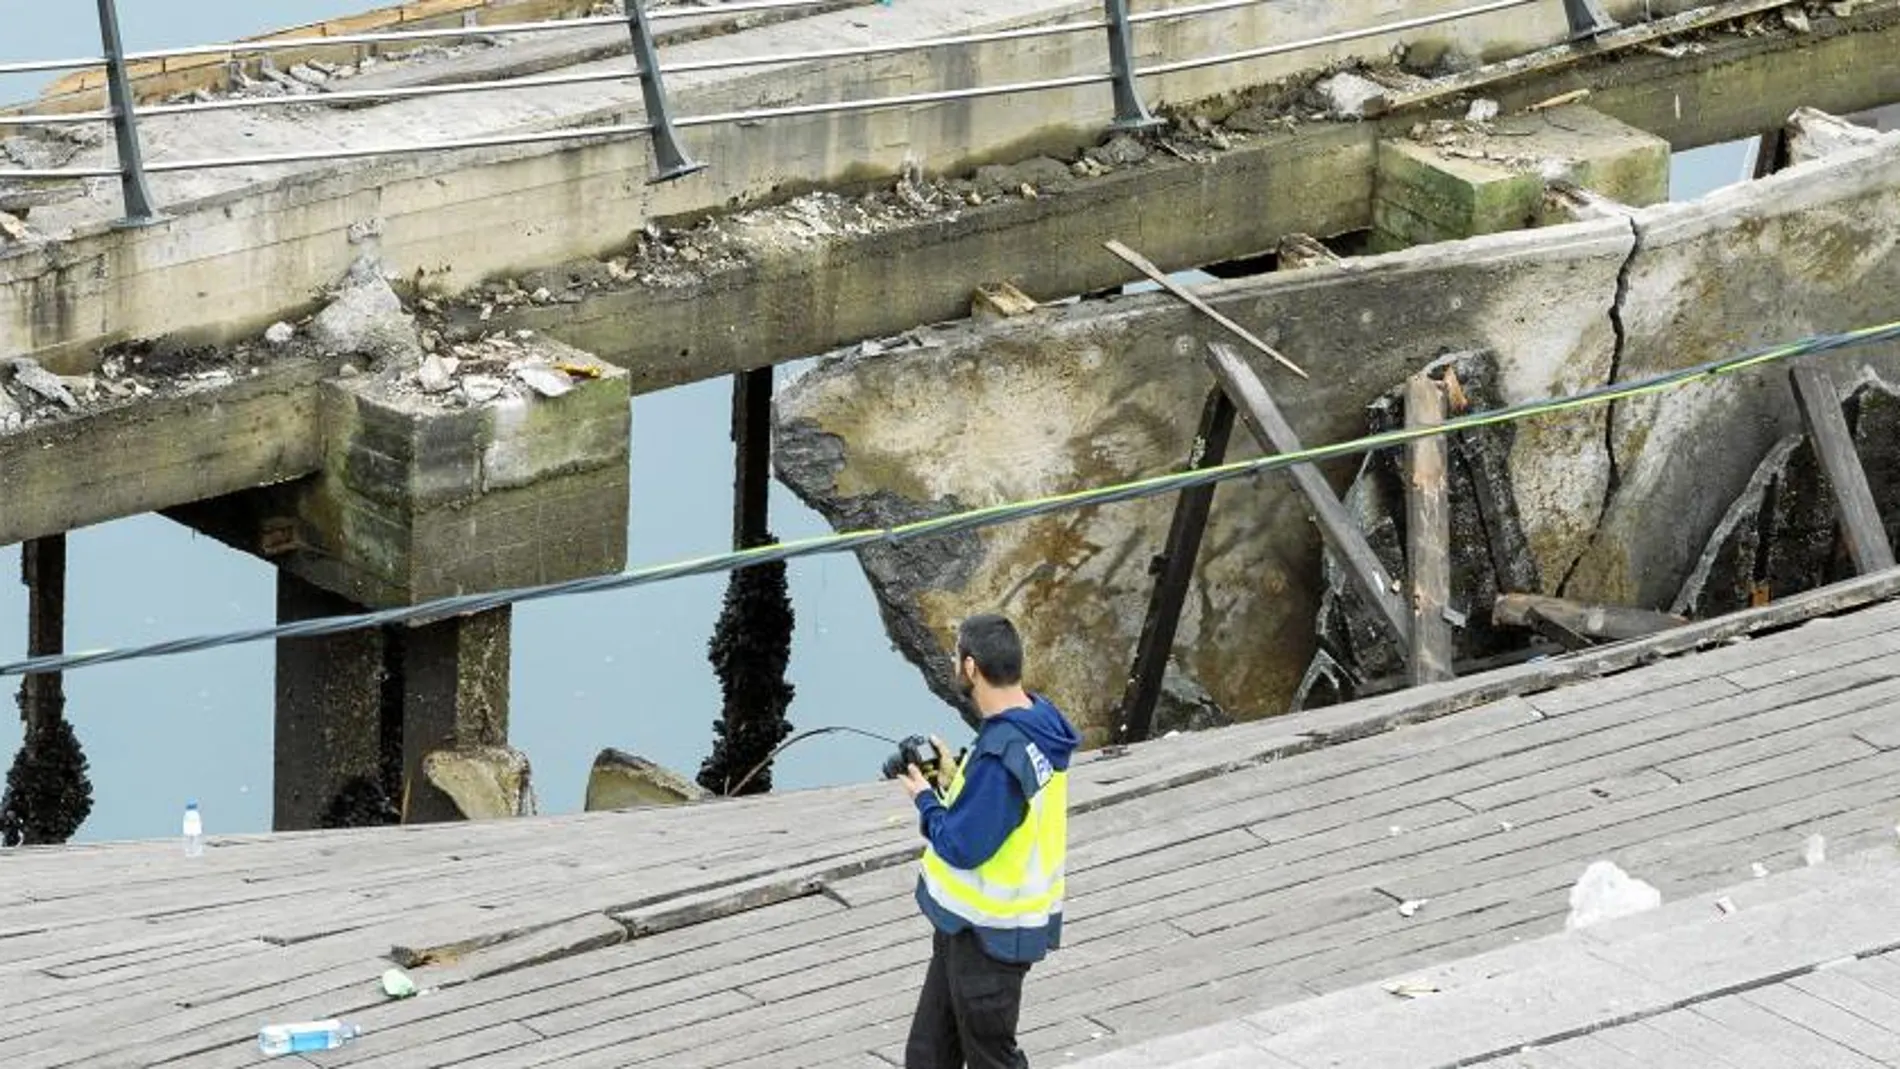 El Ayuntamiento de Vigo y la Autoridad Portuaria siguen sin ponerse de acuerdo sobre quién asume lo sucedido